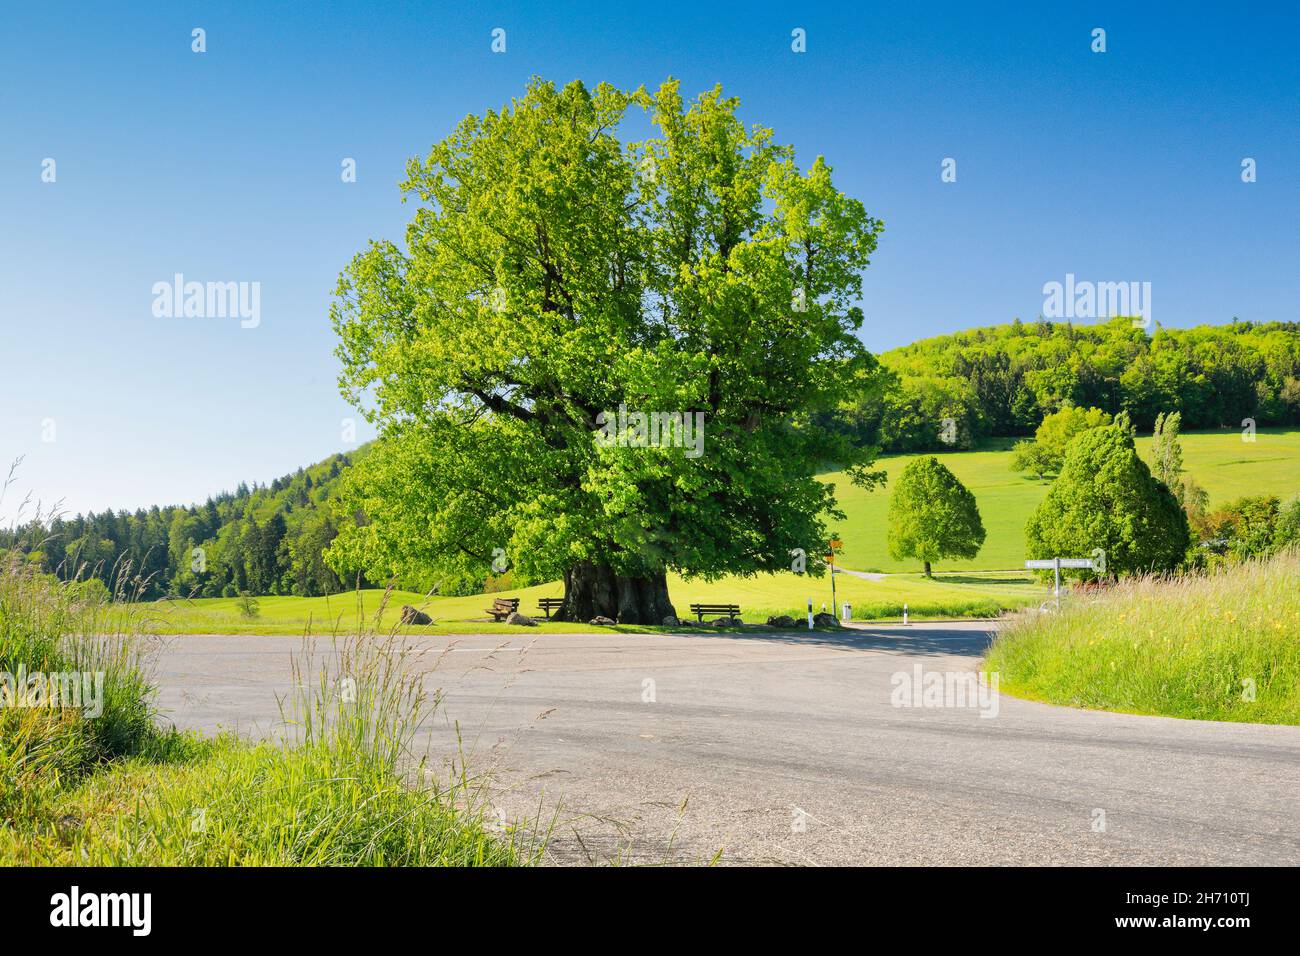 Die Linner Linden. Große, alte Linde (etwa 800 Jahre alt) steht unter blauem Himmel an der Weggabelung. Linn im Kanton Aargau, Schweiz Stockfoto